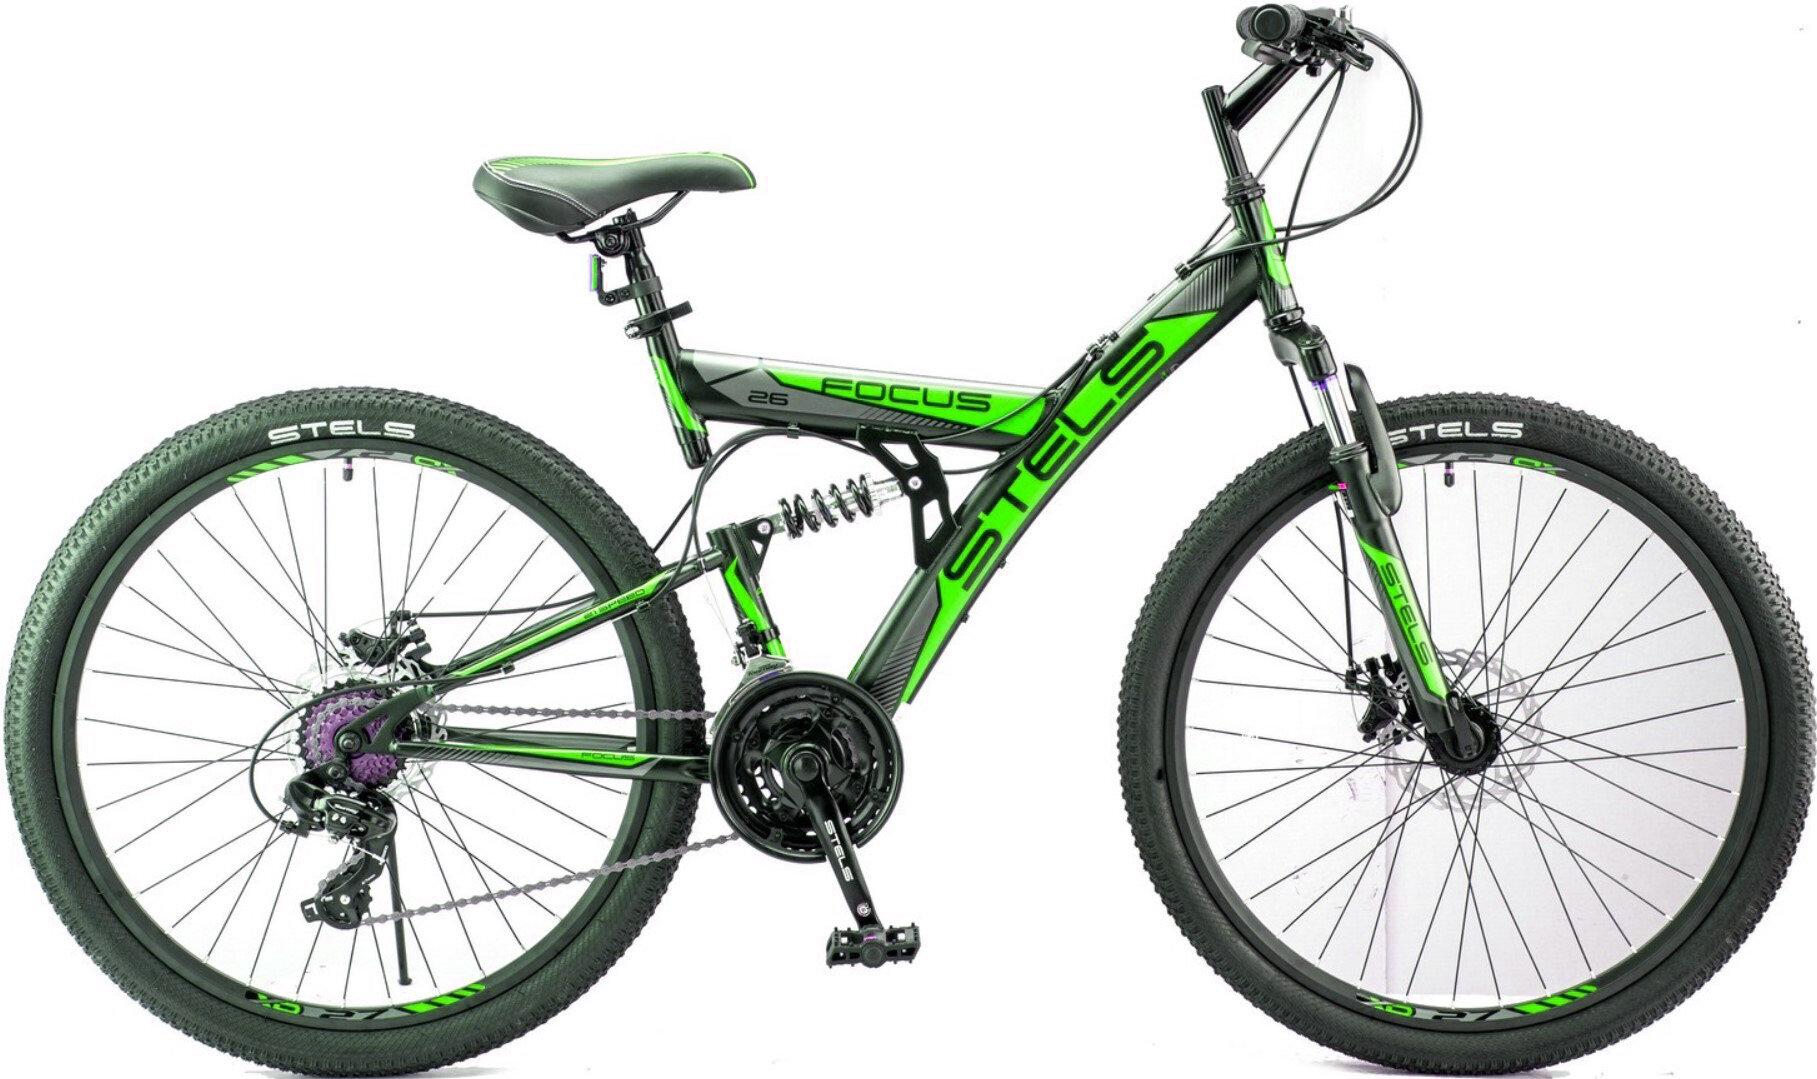 Велосипед Stels Focus MD 21 26 26х18 черный/зеленый (2018)